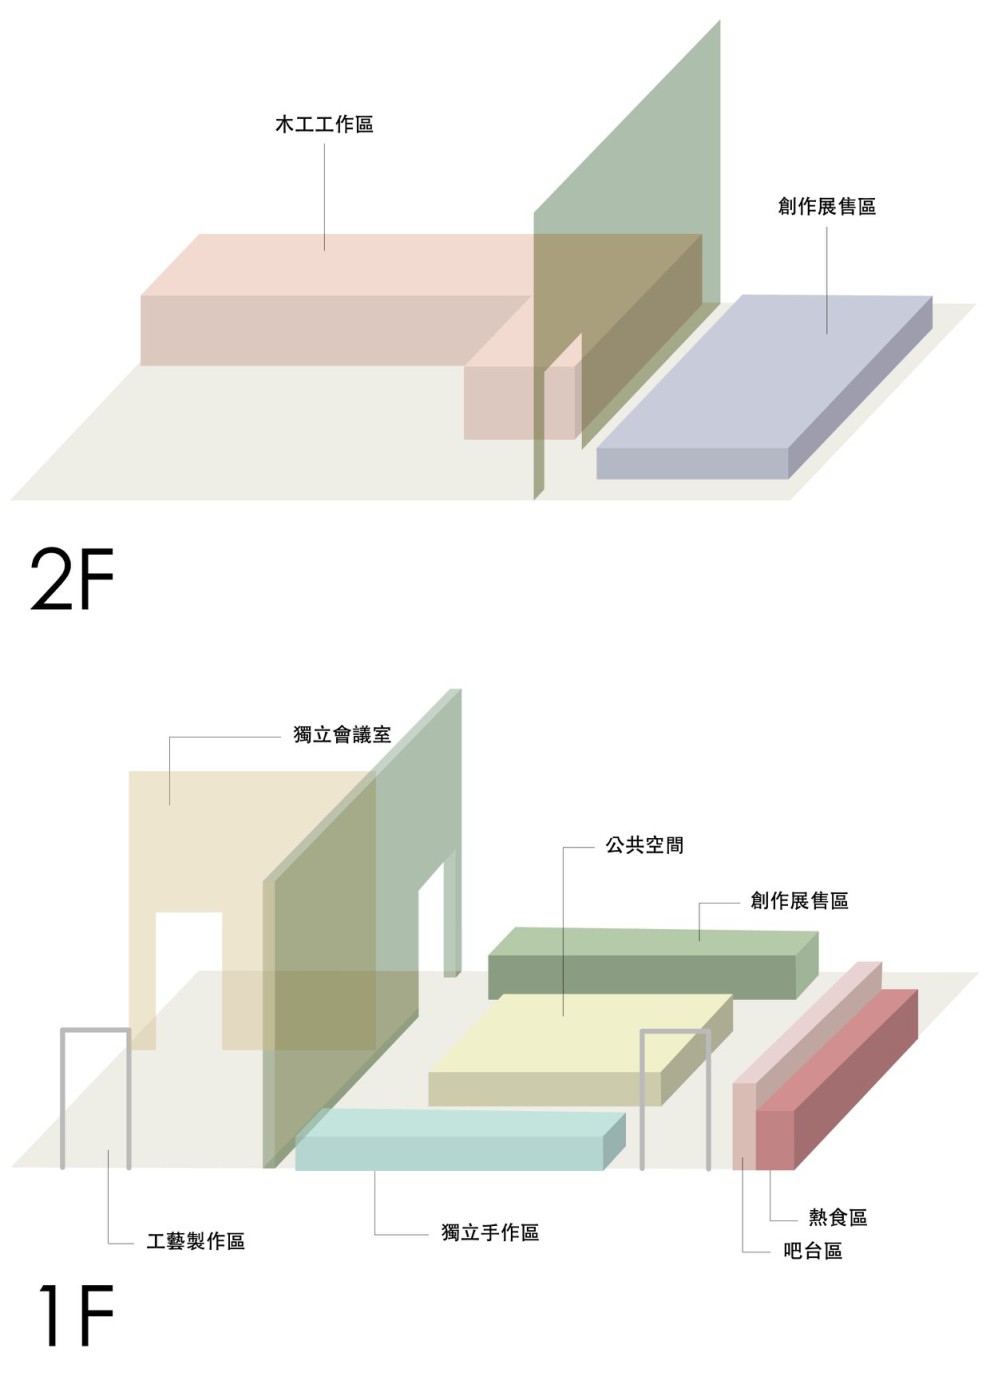 2F超大空間與高複合性使用區域